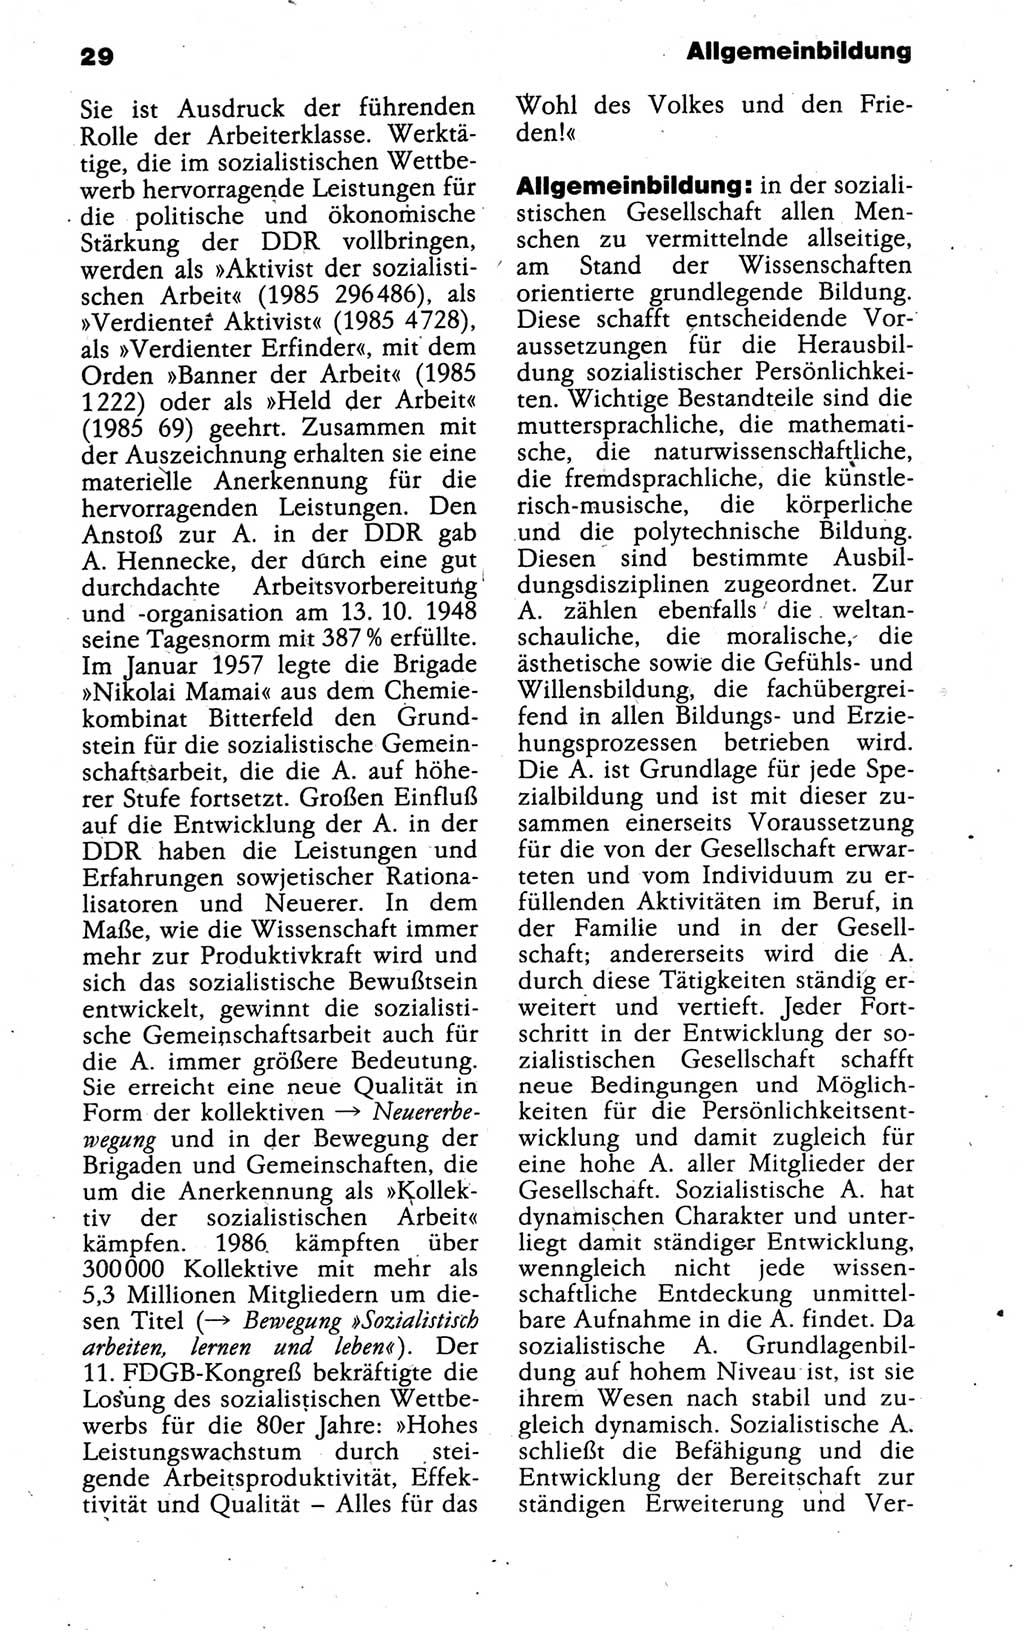 Kleines politisches Wörterbuch [Deutsche Demokratische Republik (DDR)] 1988, Seite 29 (Kl. pol. Wb. DDR 1988, S. 29)